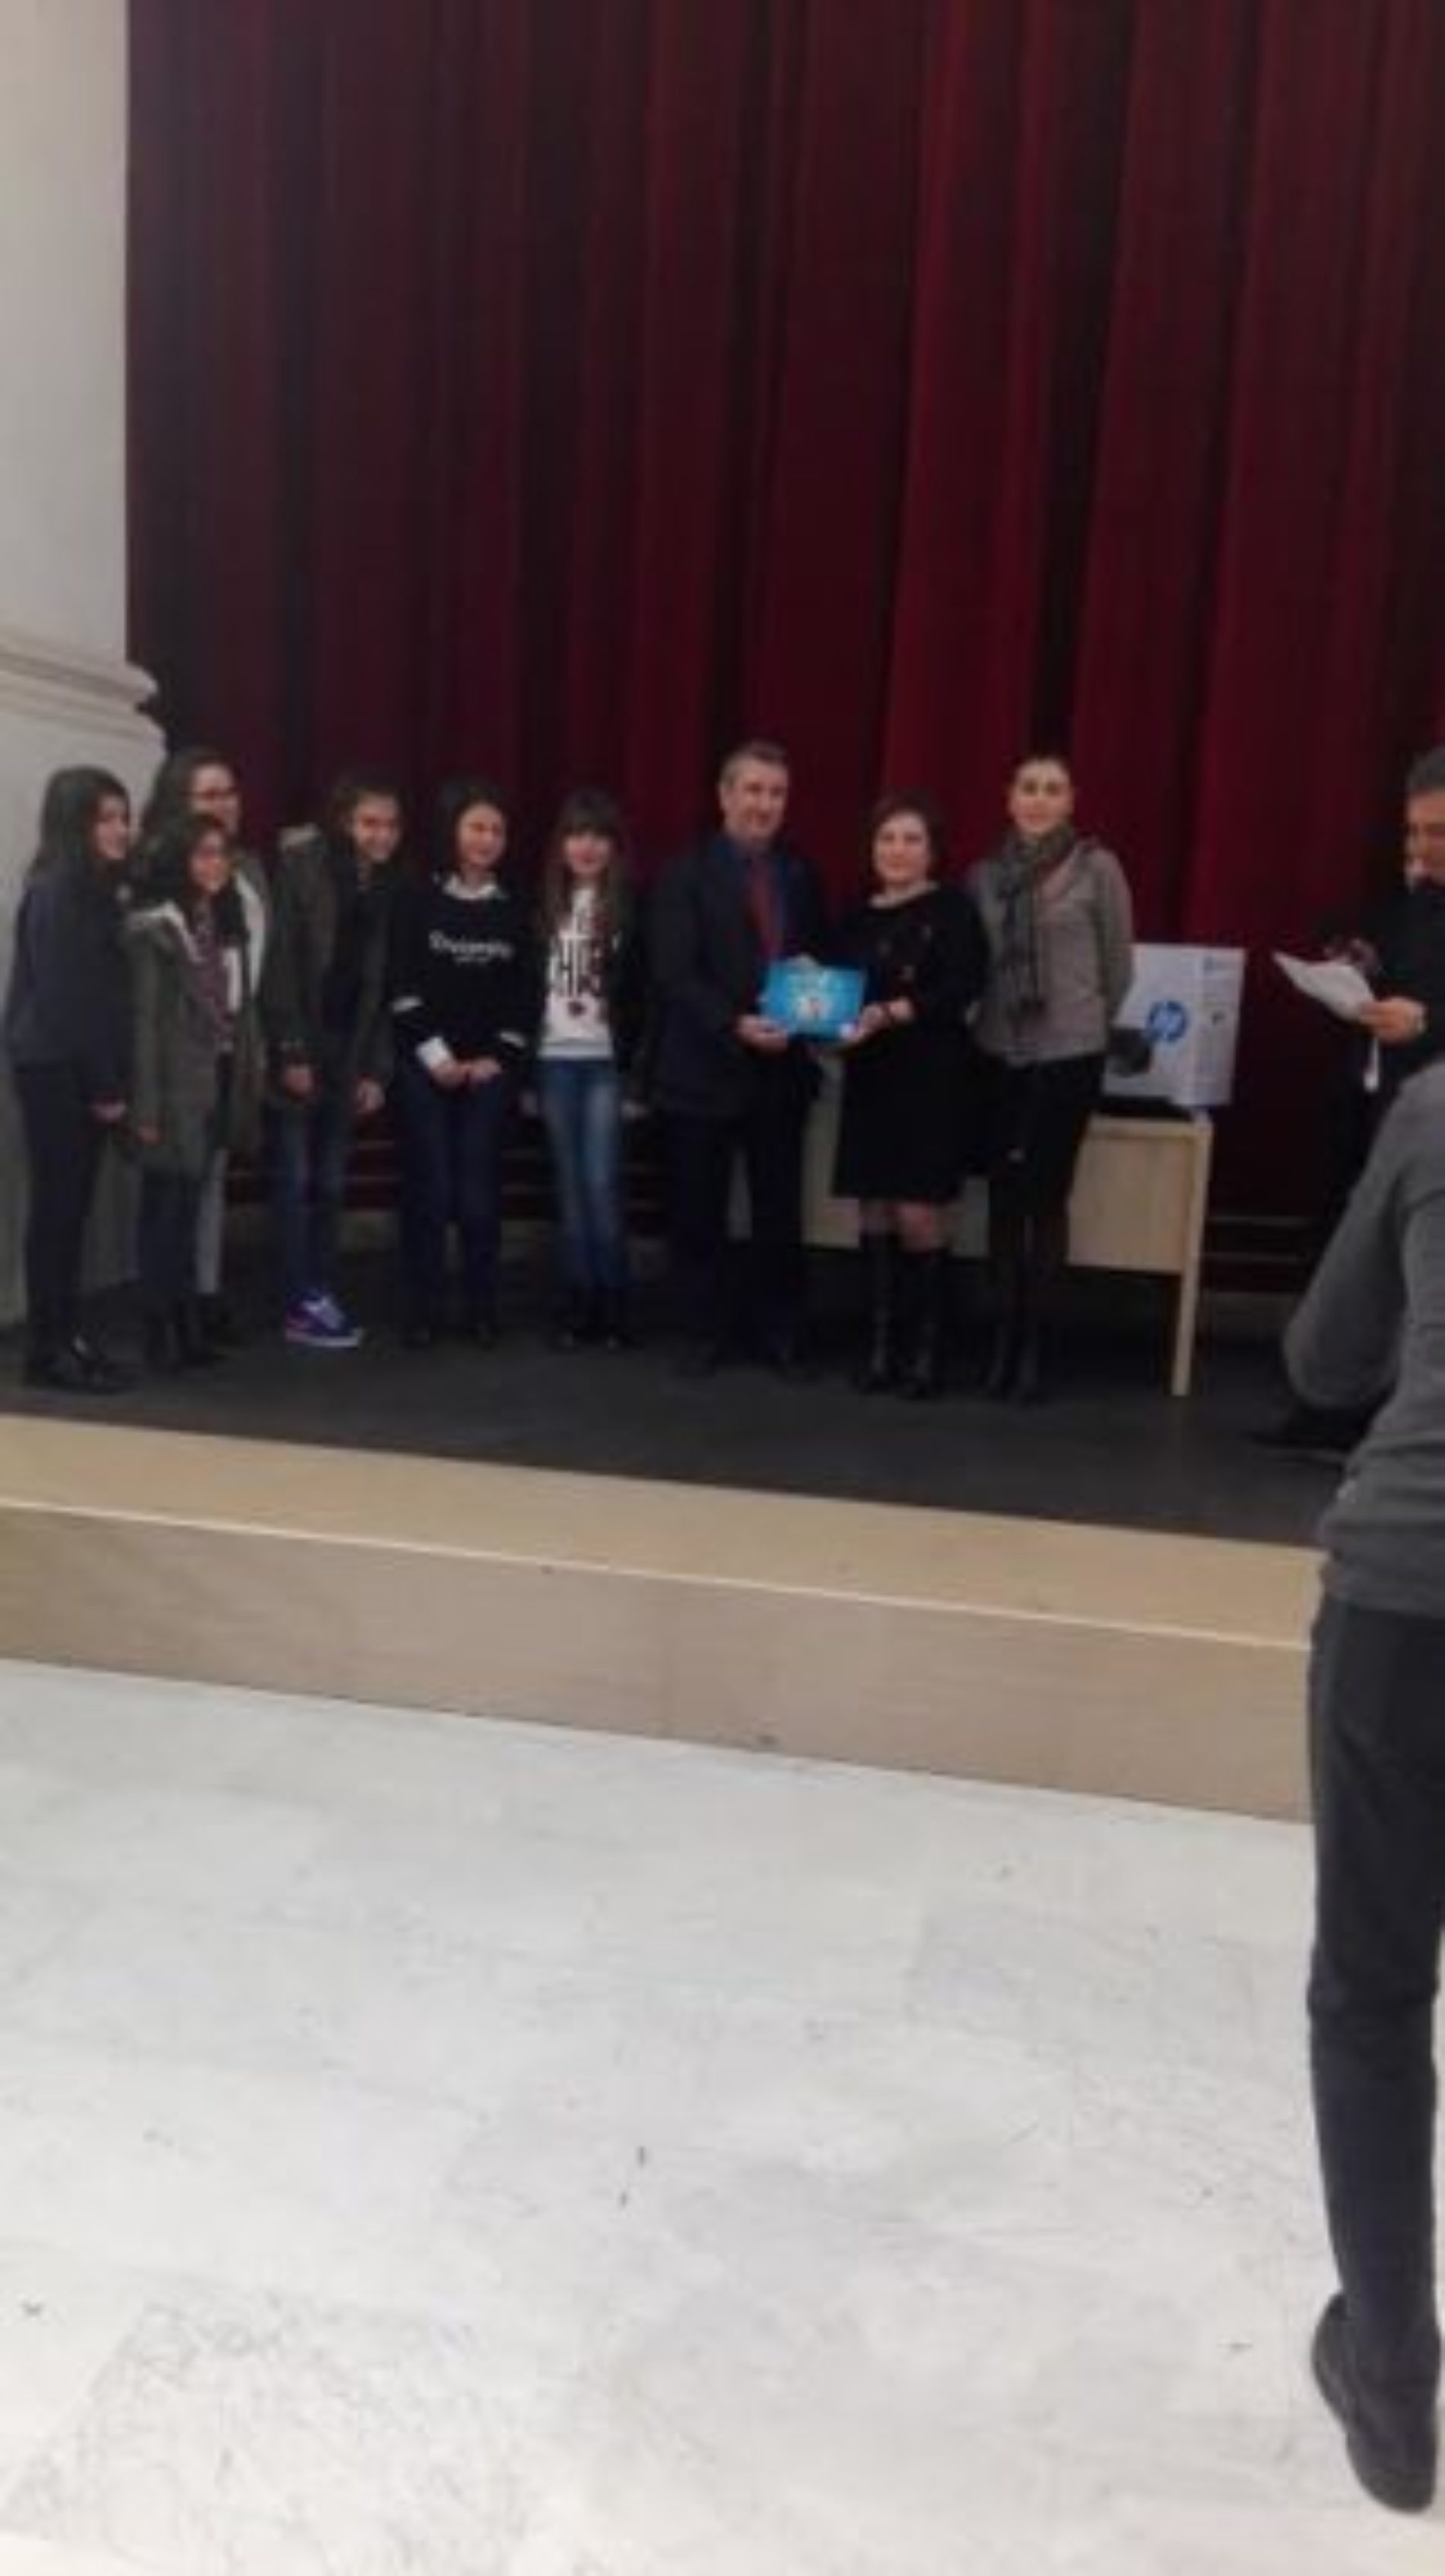 La classe IIA della scuola media “ G. VERGA” di Barrafranca premiata in merito al progetto “Produzione di energia dalla frutta”